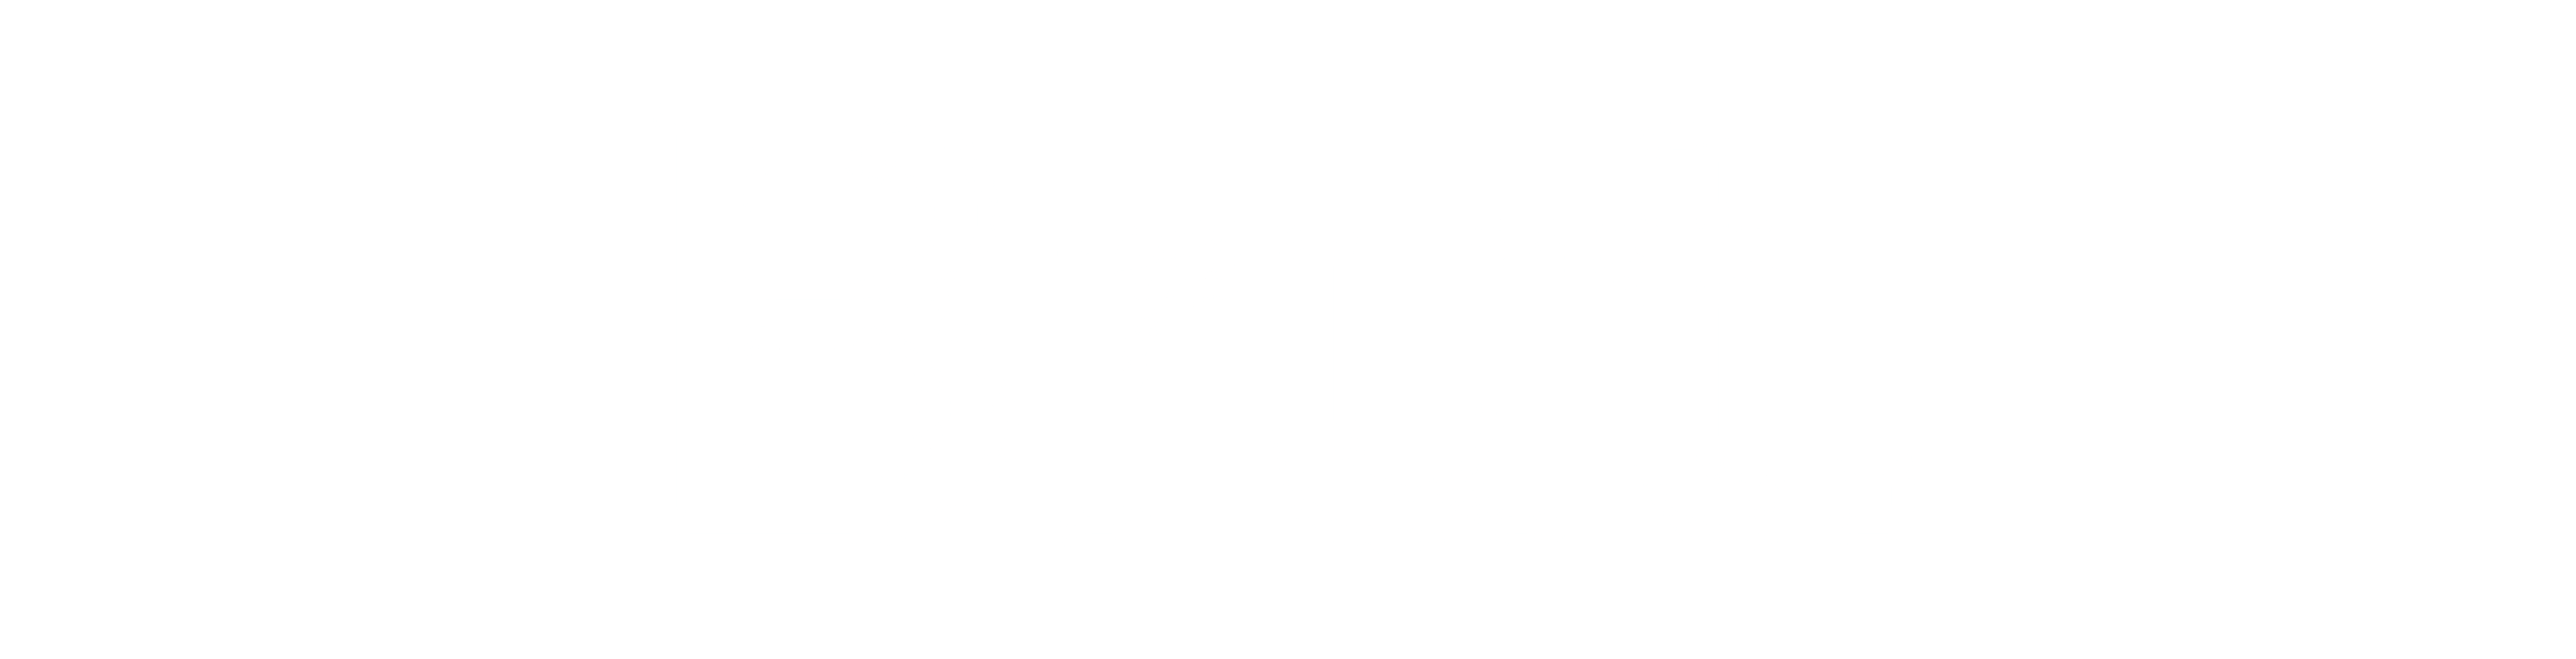 Brut-carousel-logo